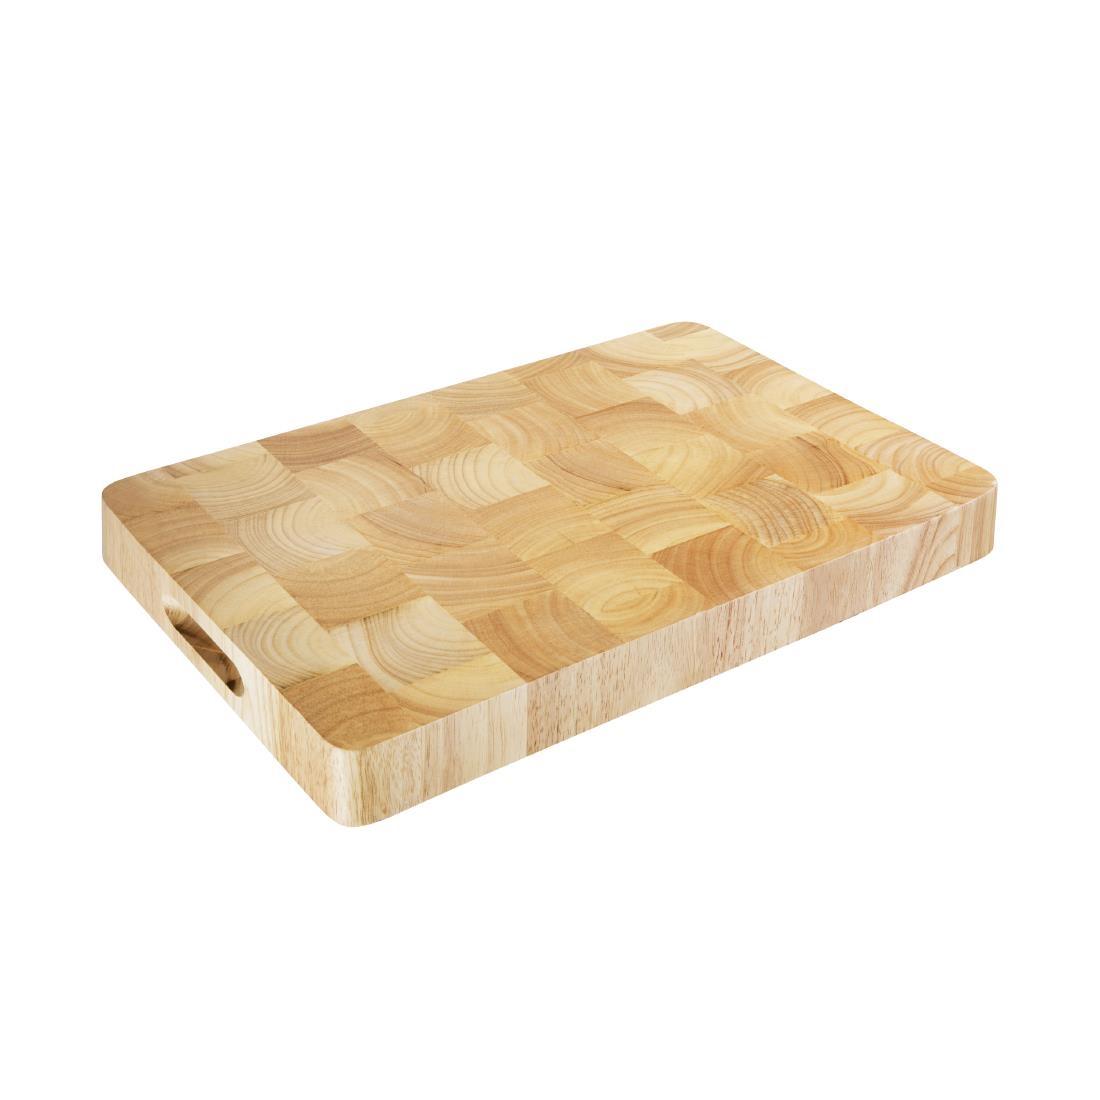 Vogue Rectangular Wooden Chopping Board Medium - C459  - 1